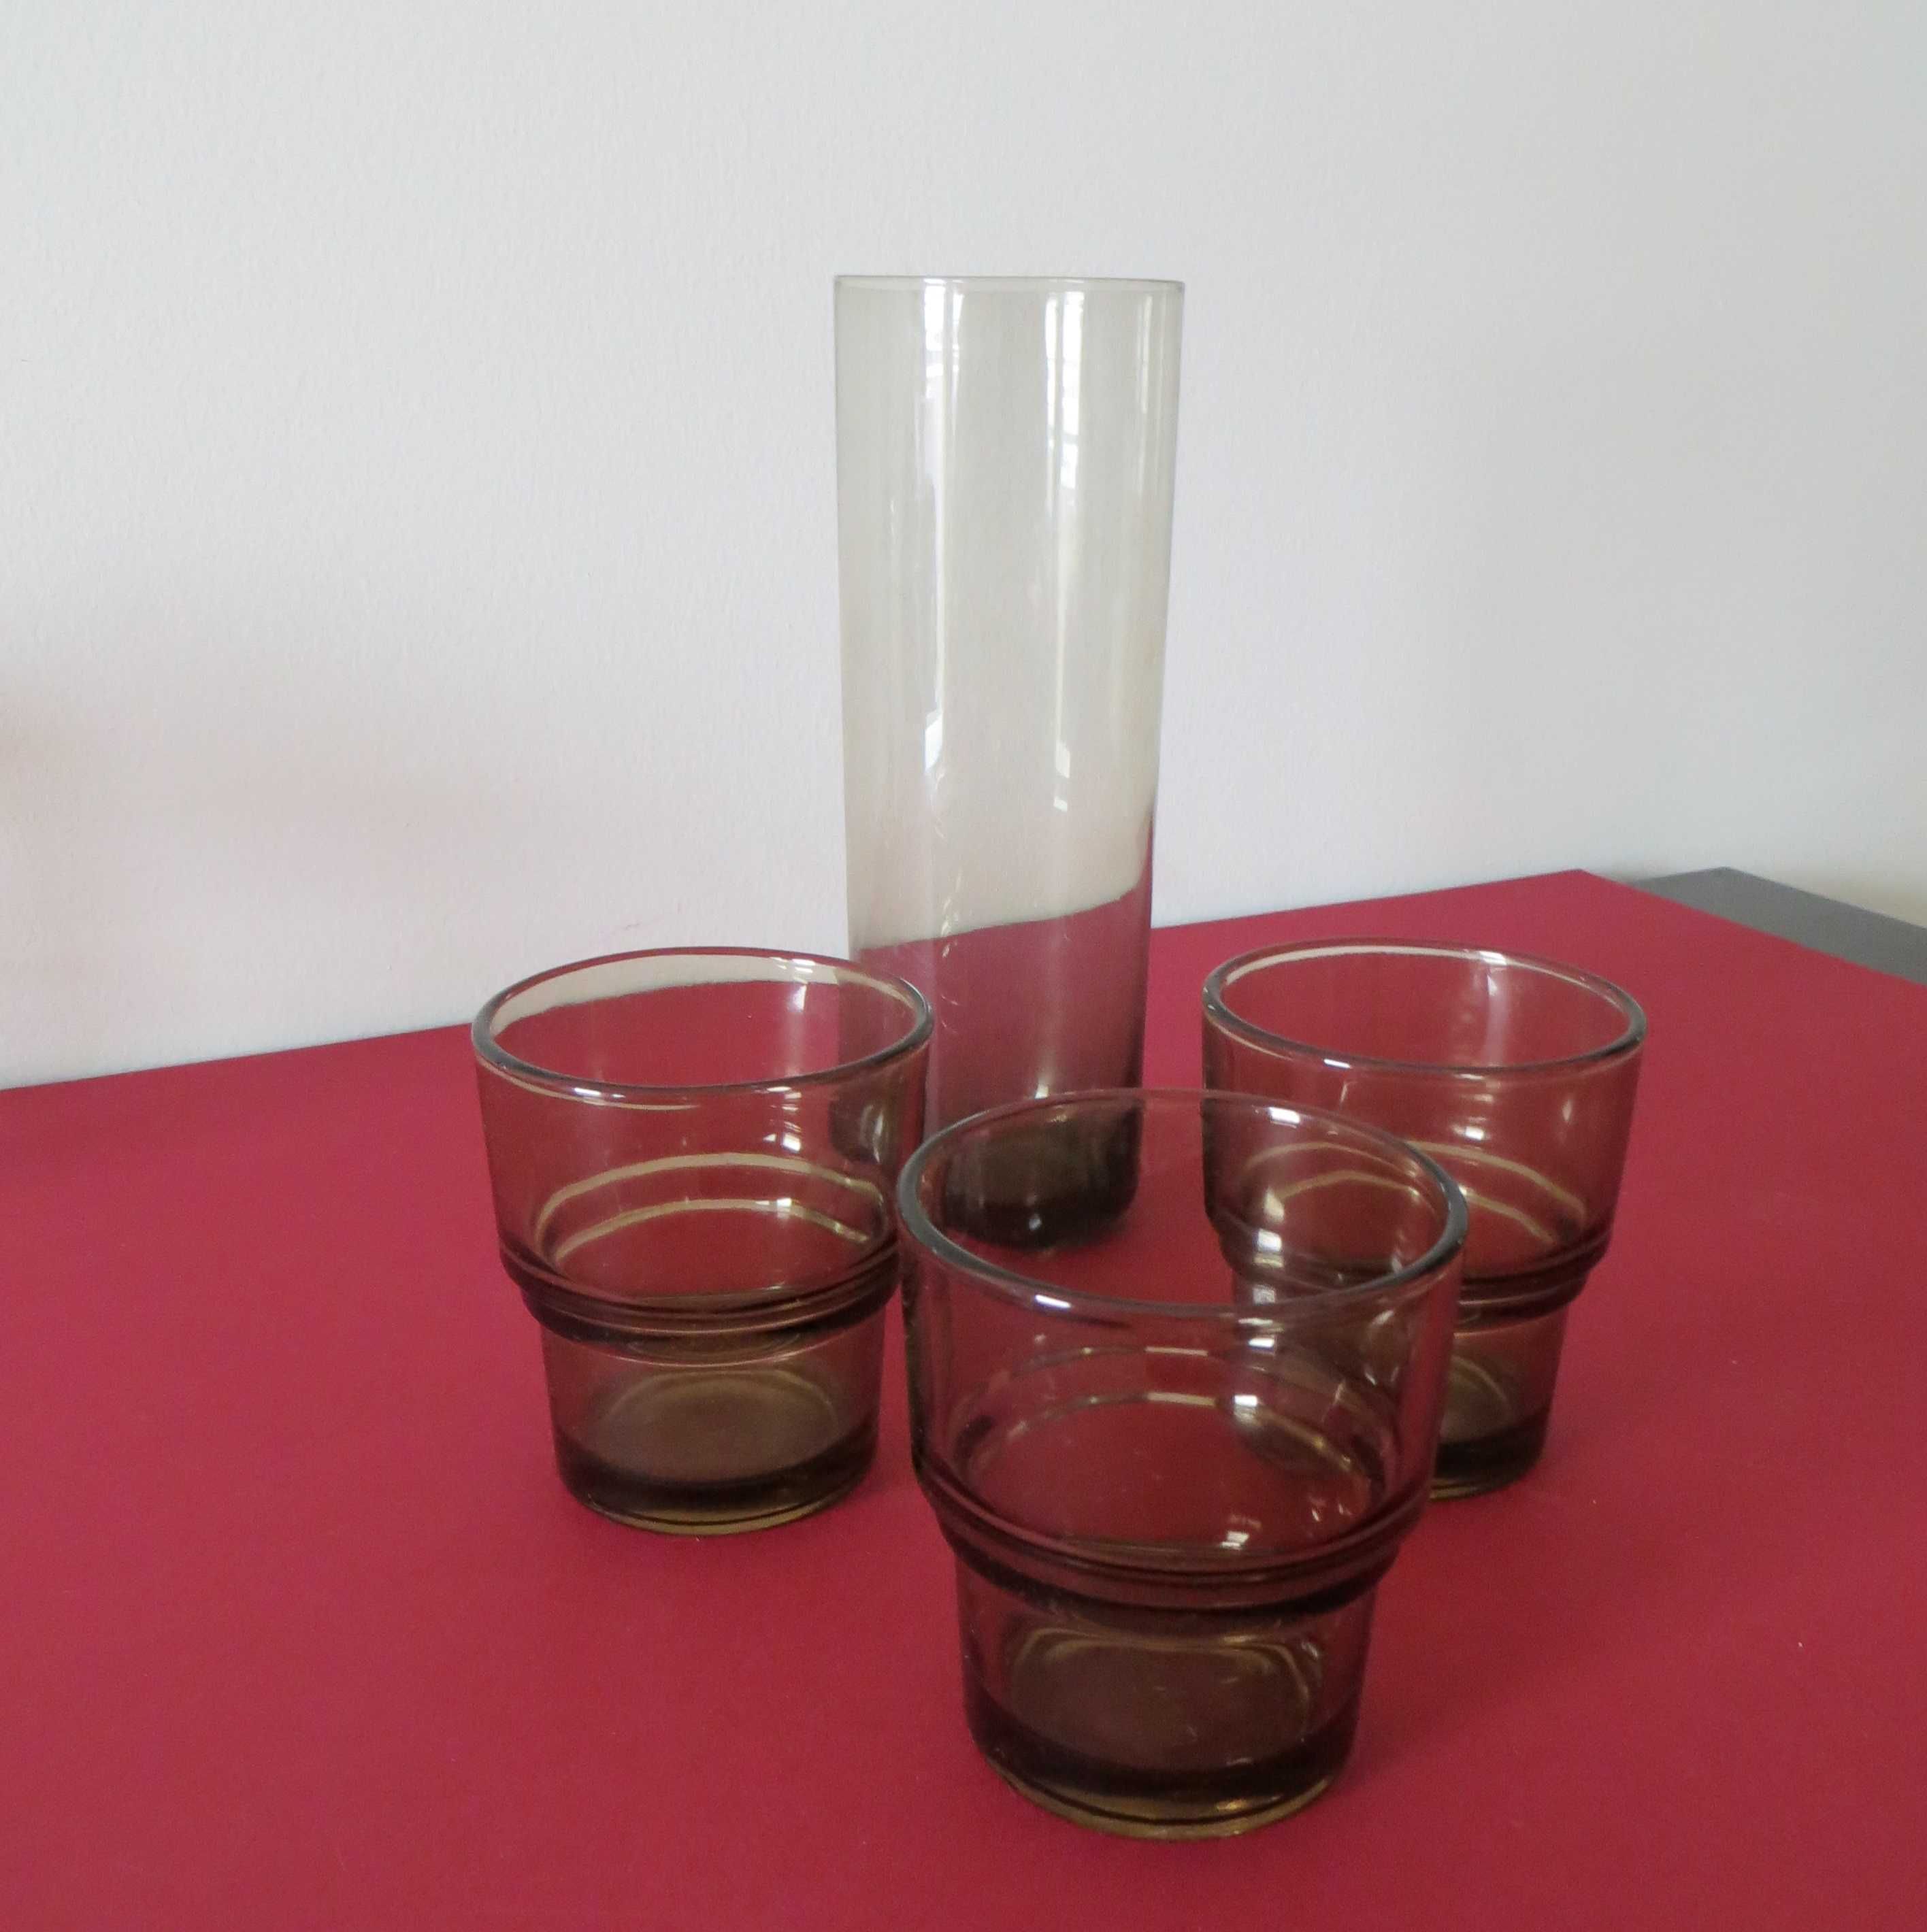 Jarra Antiga, Vidro Alta com e 3 copos mesa também em vidro castanho